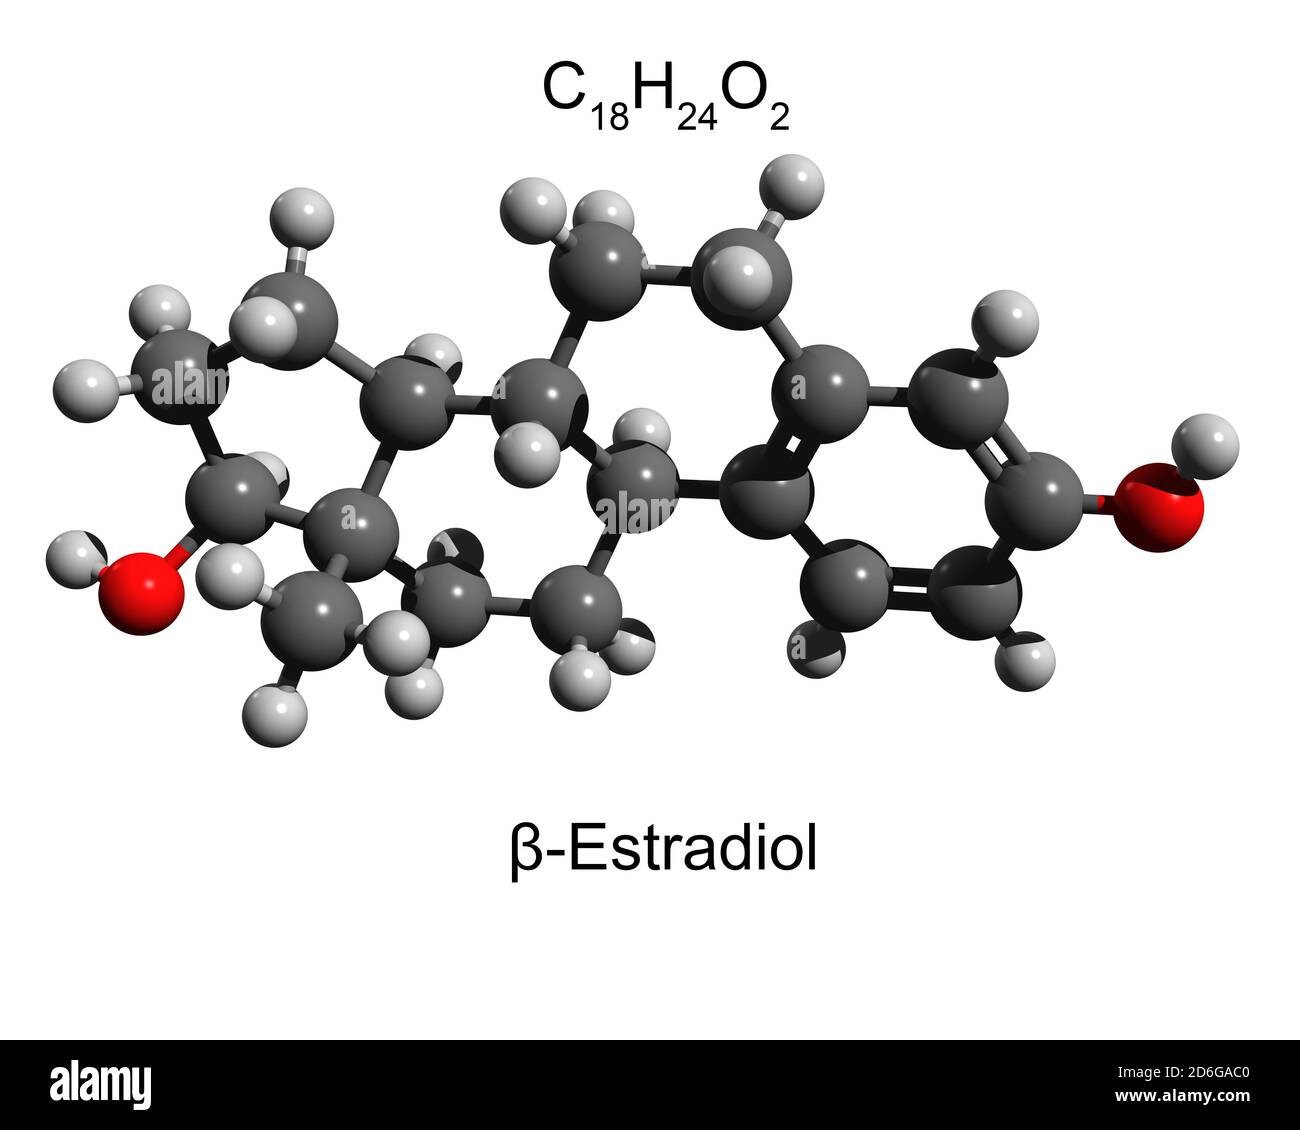 Structure de la molécule d'estradiol de l'hormone femelle principale, modèle de boule et de bâton, fond blanc, illustration 3D Banque D'Images